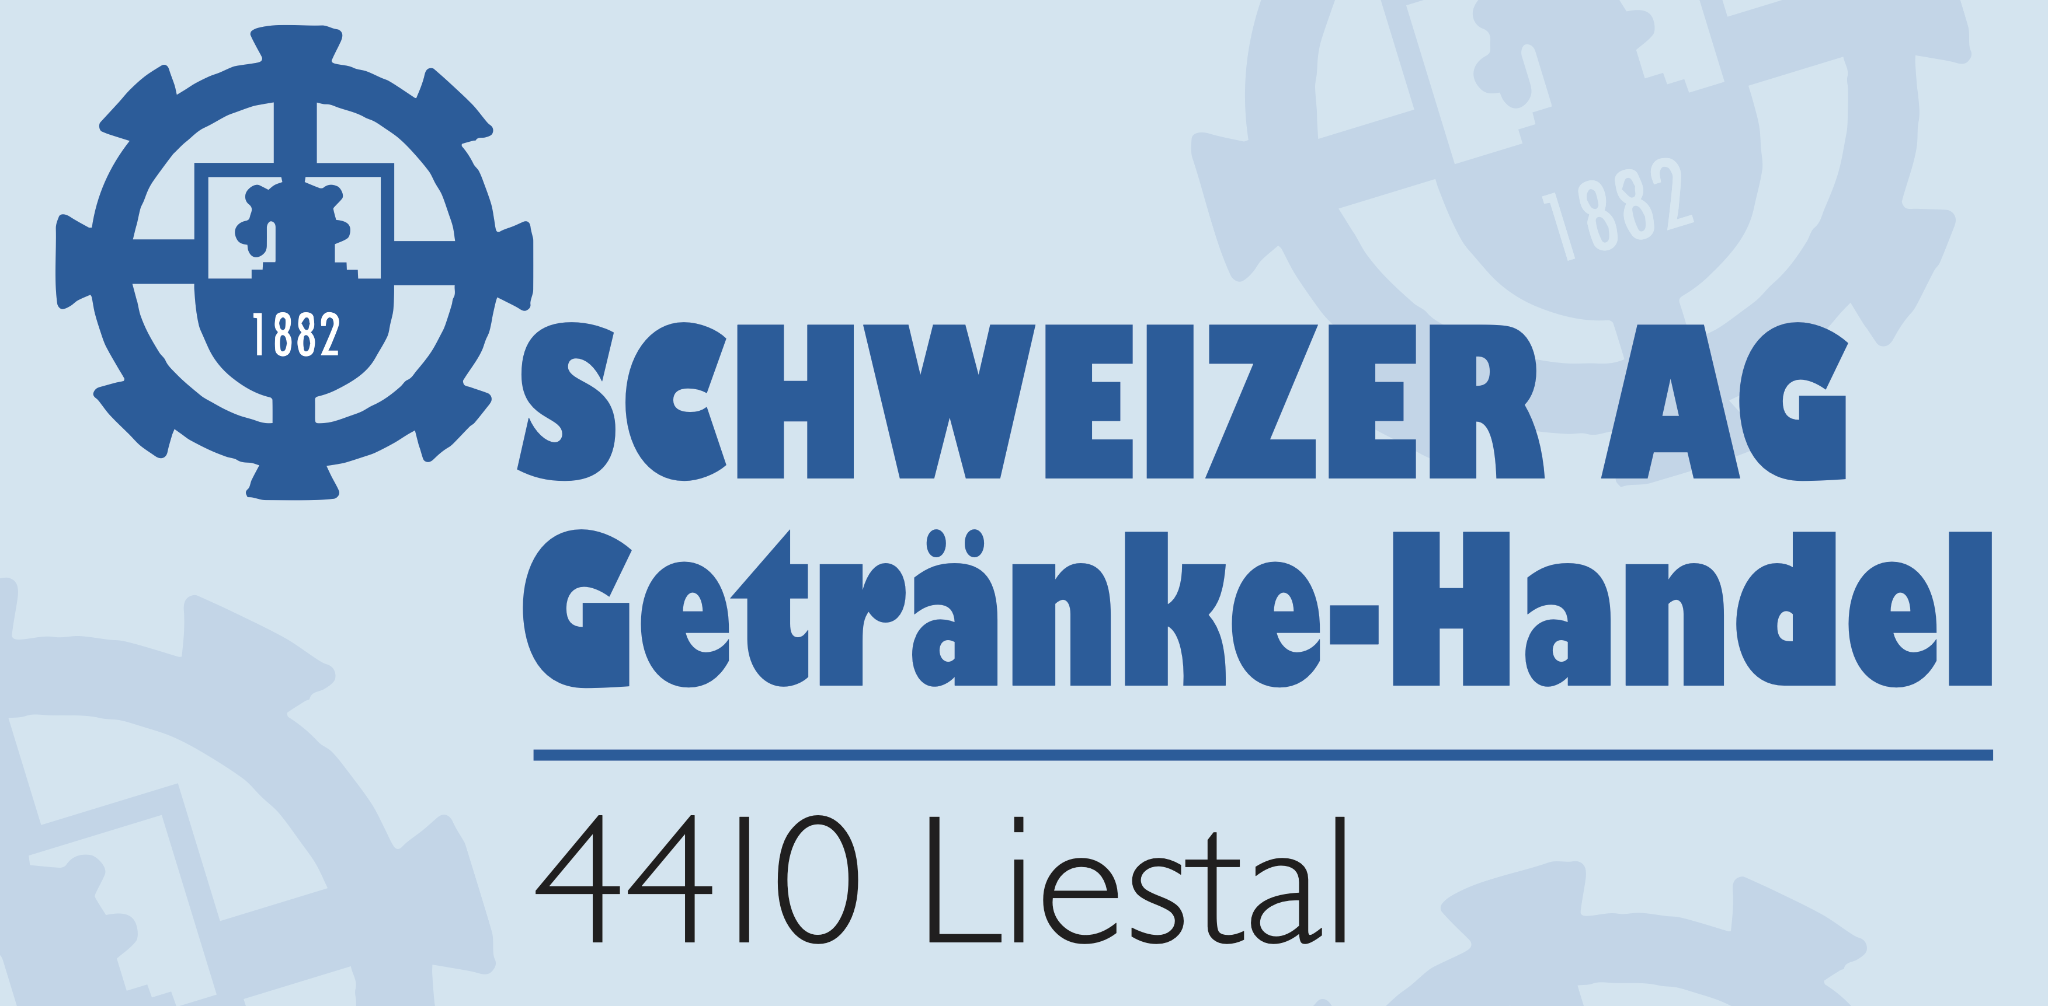 Schweizer AG Getränke-Handel